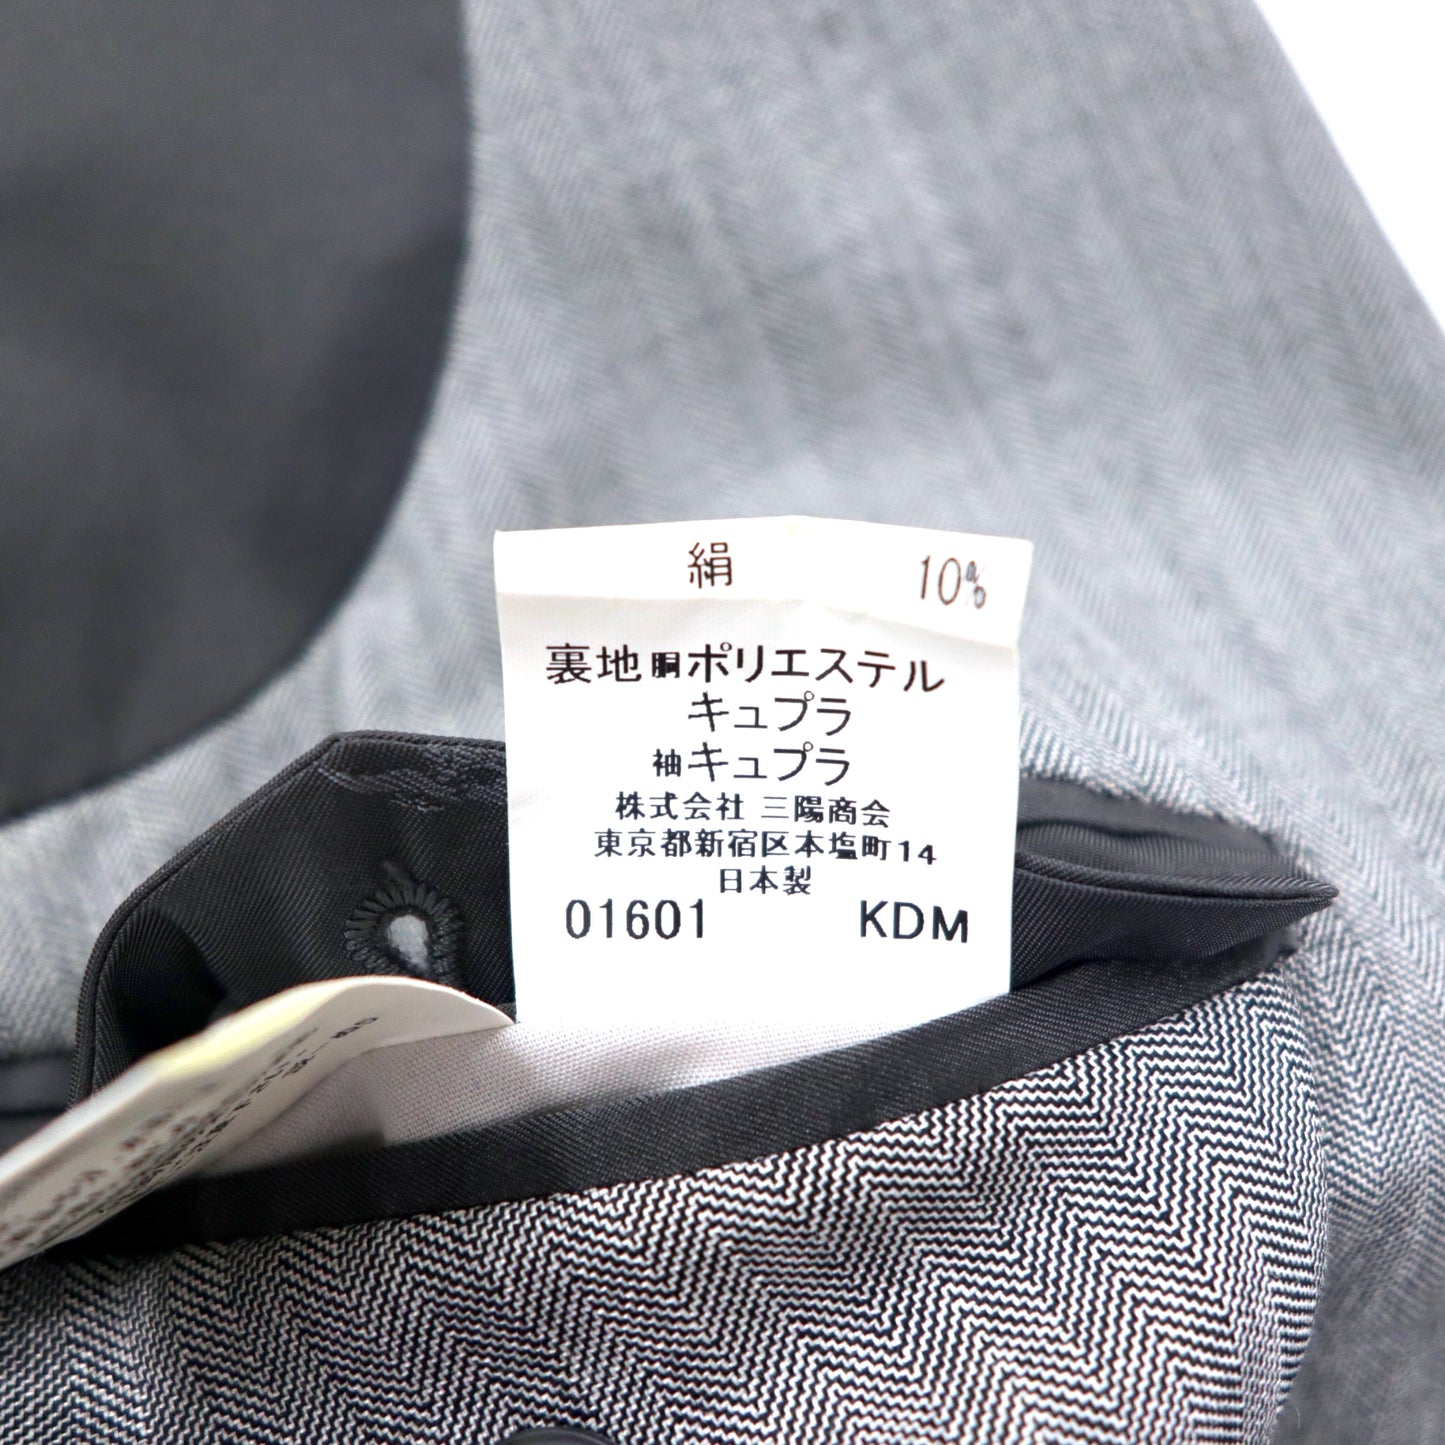 BURBERRY ダブル テーラードジャケット 170 BB5 グレー ウール シルク混 飾りボタン 日本製